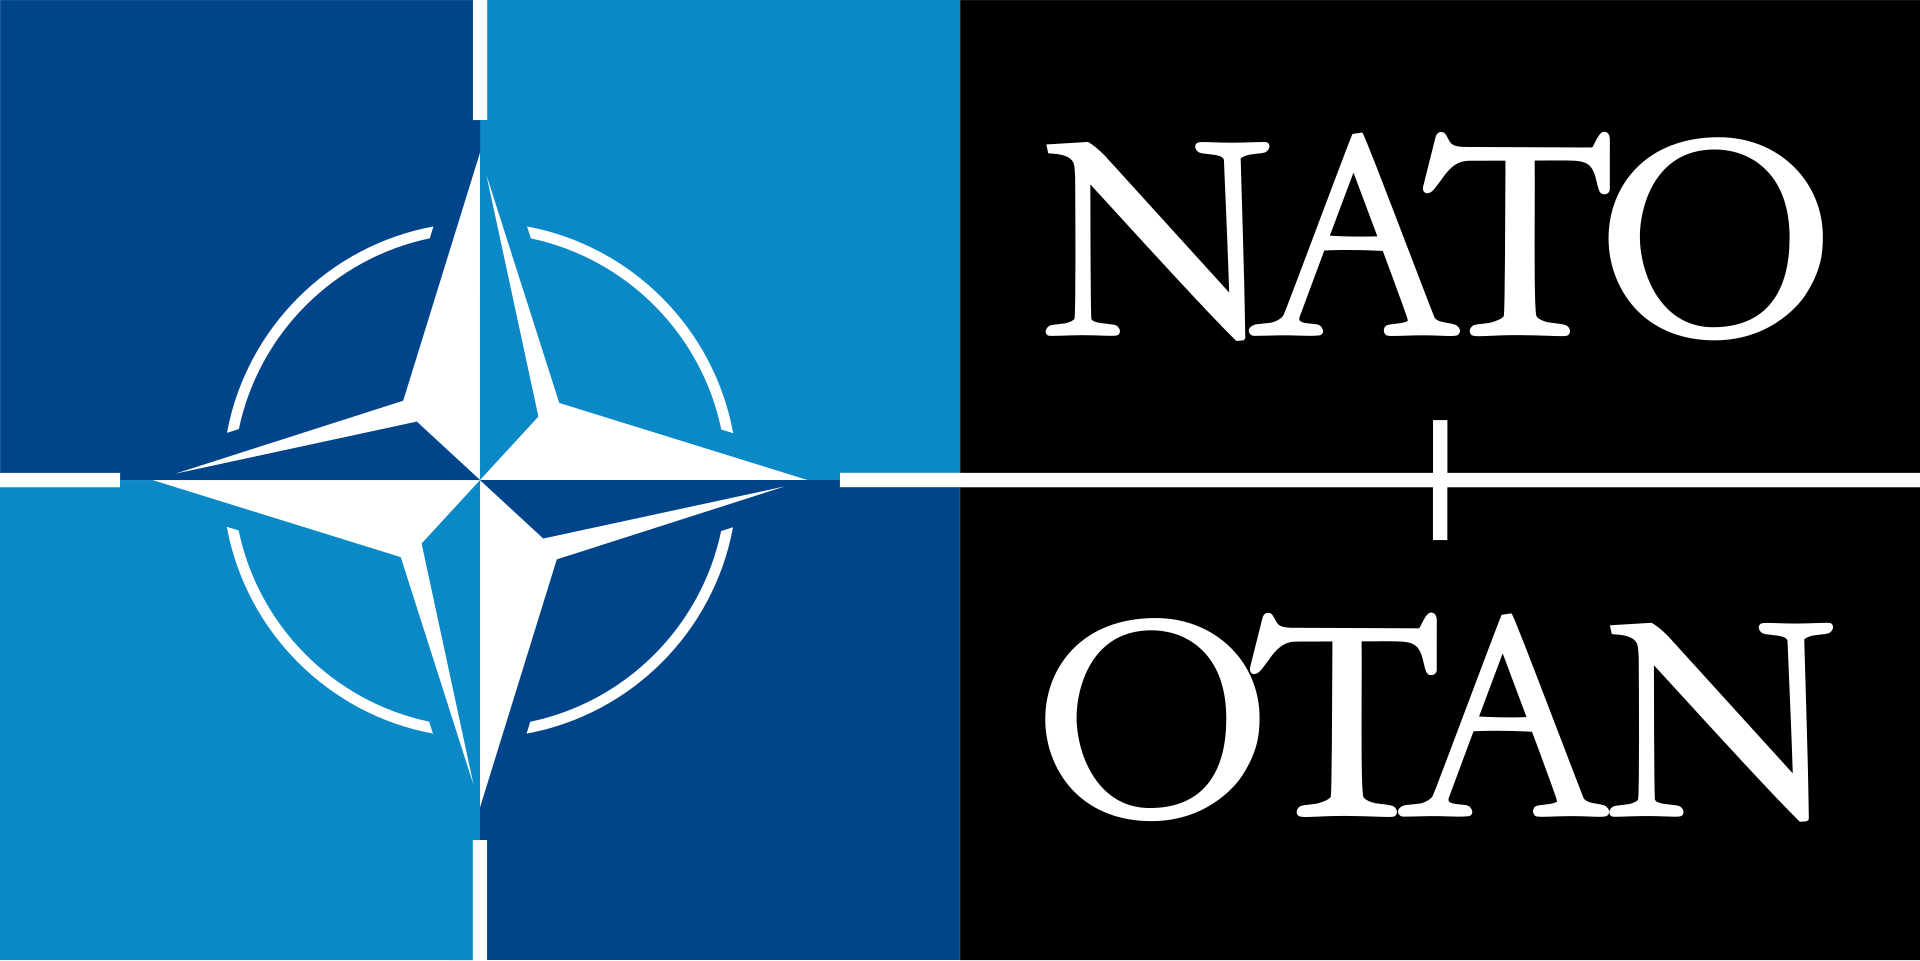 NATO - North Atlantic Treaty Organization - Организация Североатлантического договора - Североатлантический Альянс